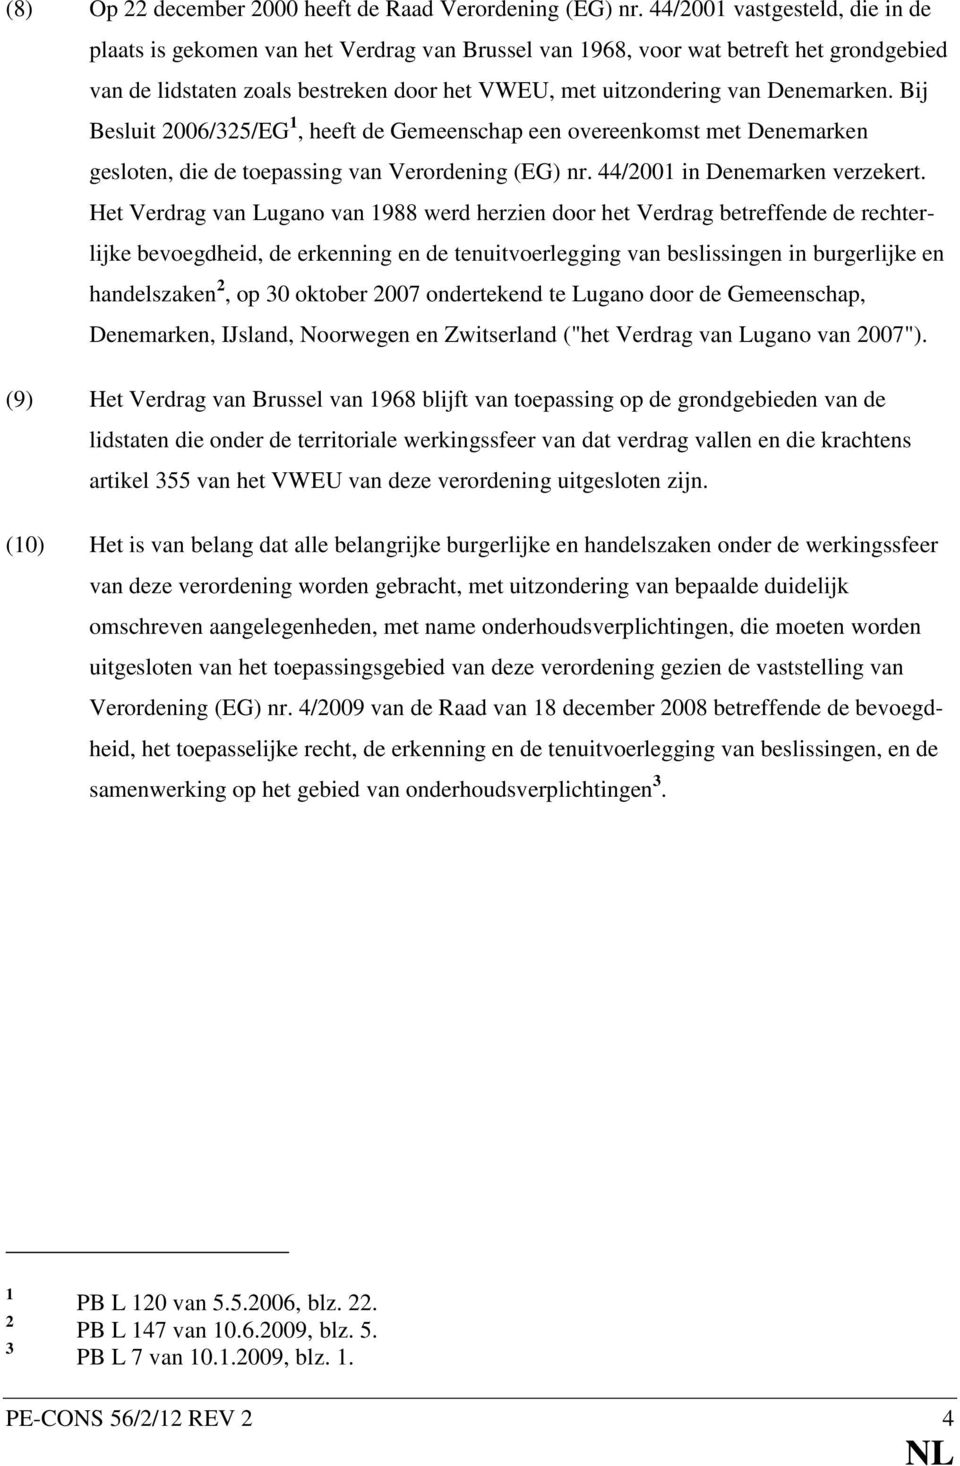 Bij Besluit 2006/325/EG 1, heeft de Gemeenschap een overeenkomst met Denemarken gesloten, die de toepassing van Verordening (EG) nr. 44/2001 in Denemarken verzekert.